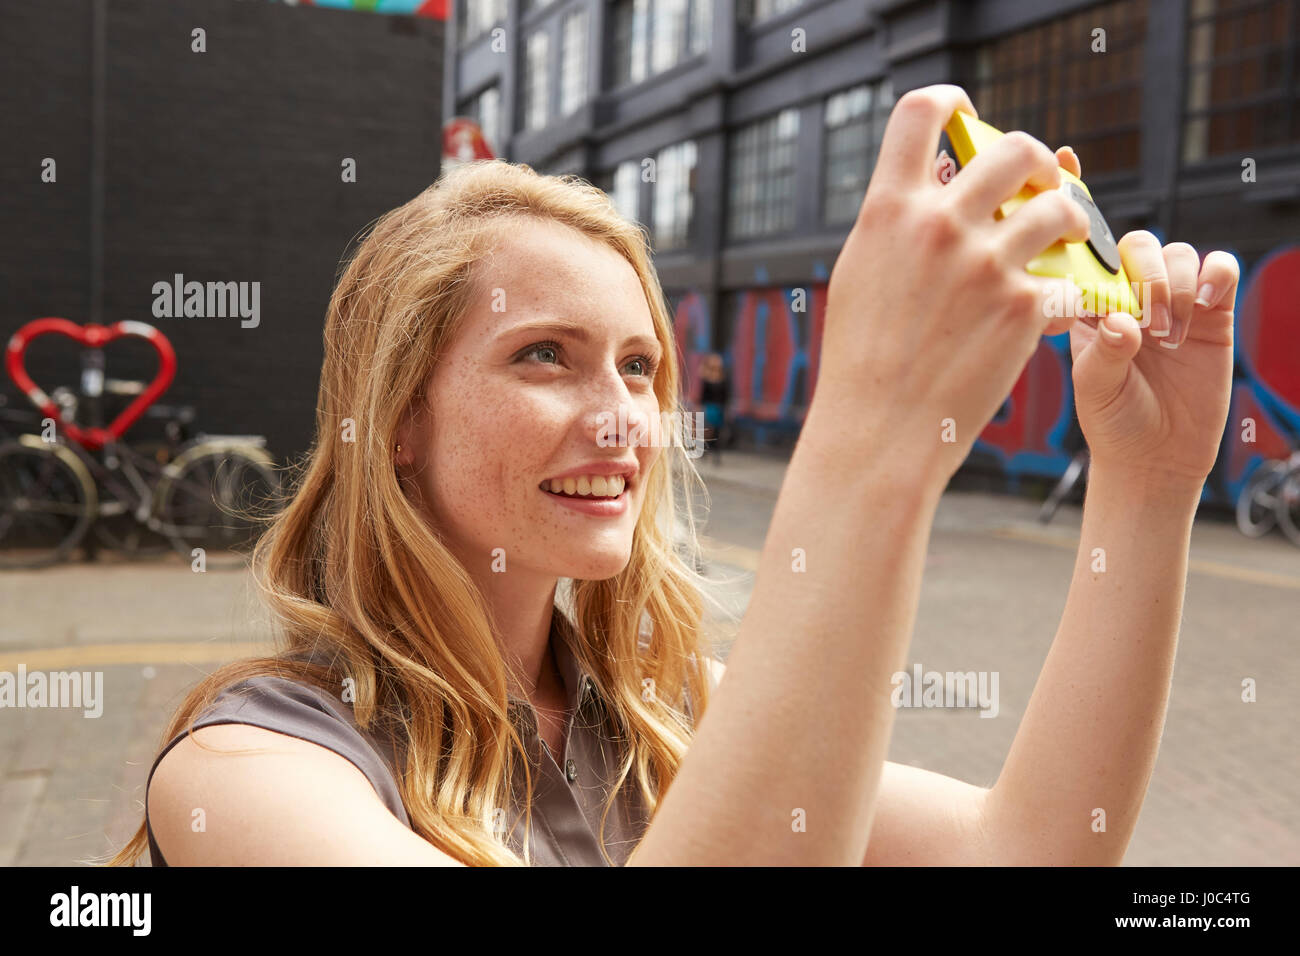 Woman taking selfie in street, London, UK Stock Photo